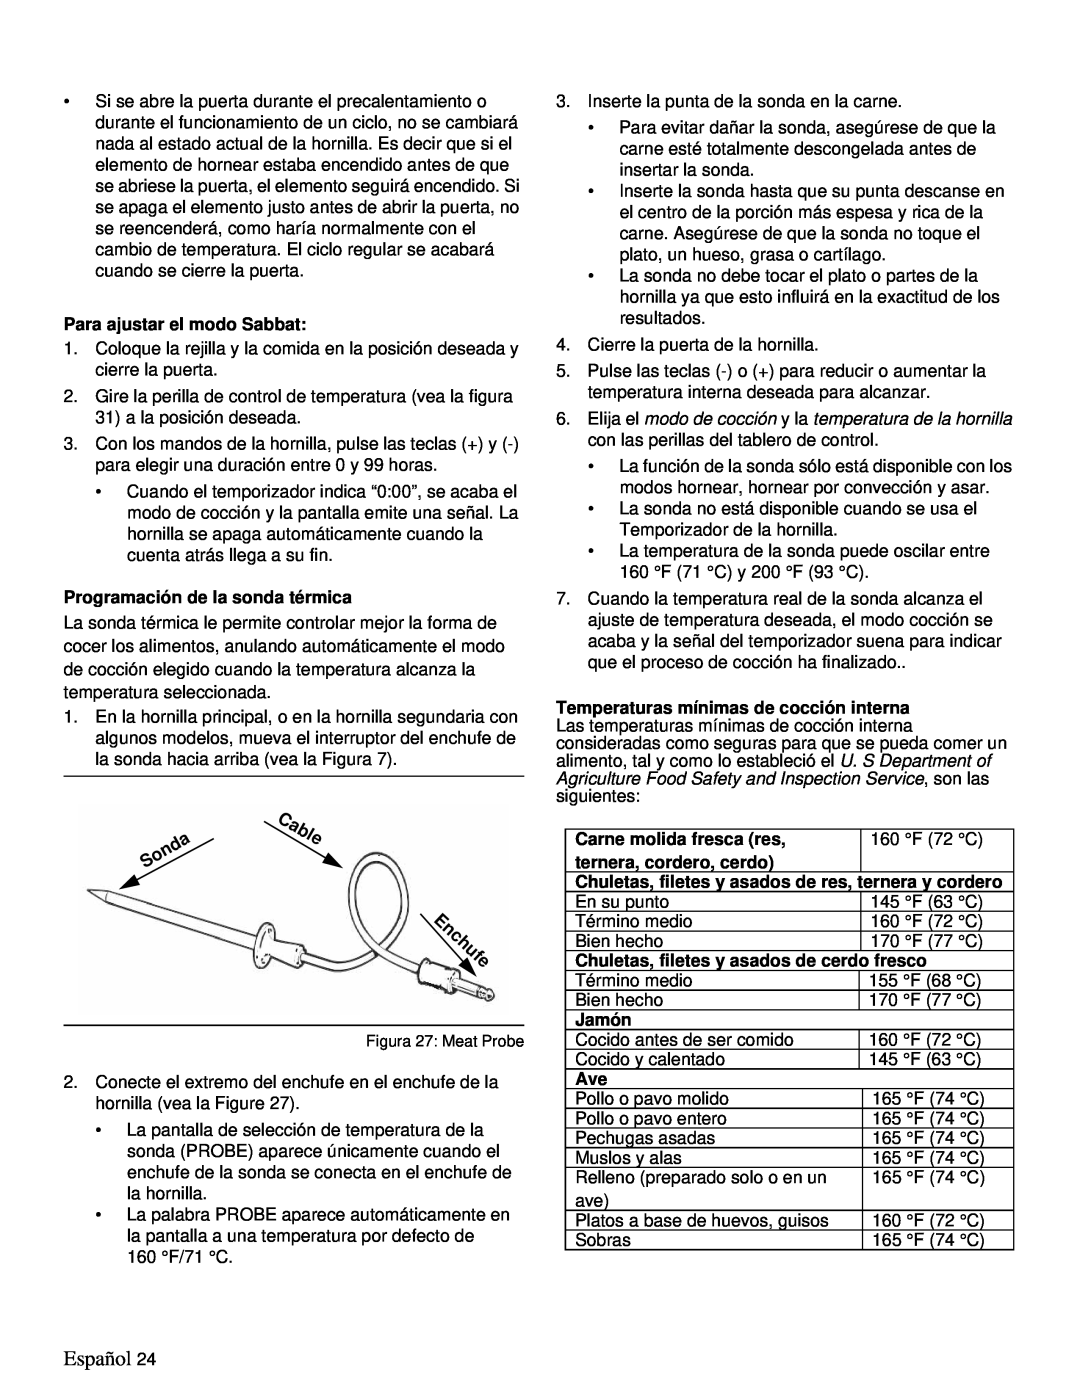 Thermador PRD48 Enchufe, Español, Para ajustar el modo Sabbat, Programación de la sonda térmica, Carne molida fresca res 